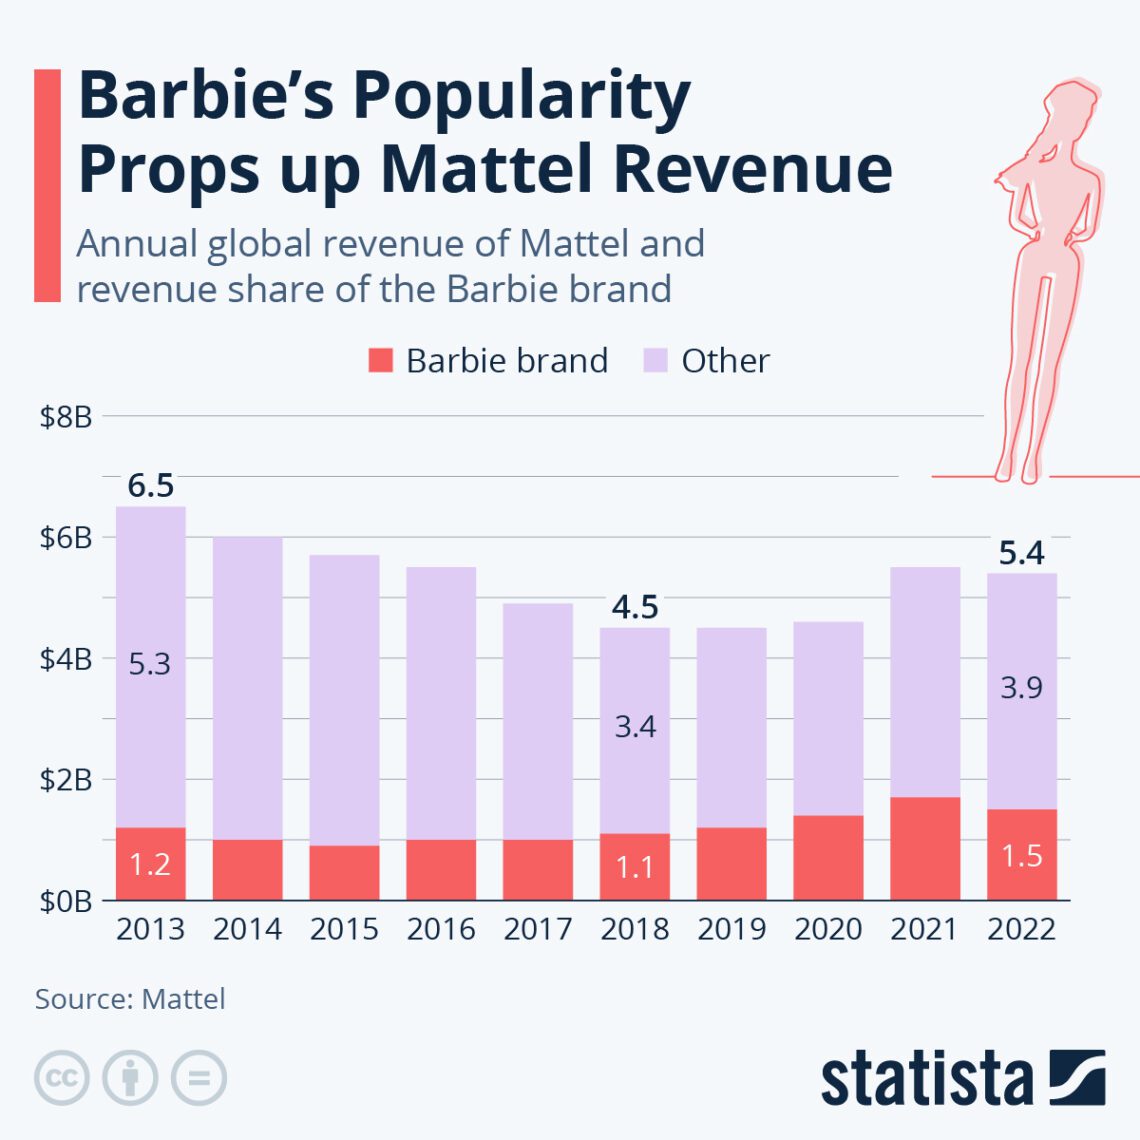 Receita da marca barbie entre os anos e 2023 e 2022